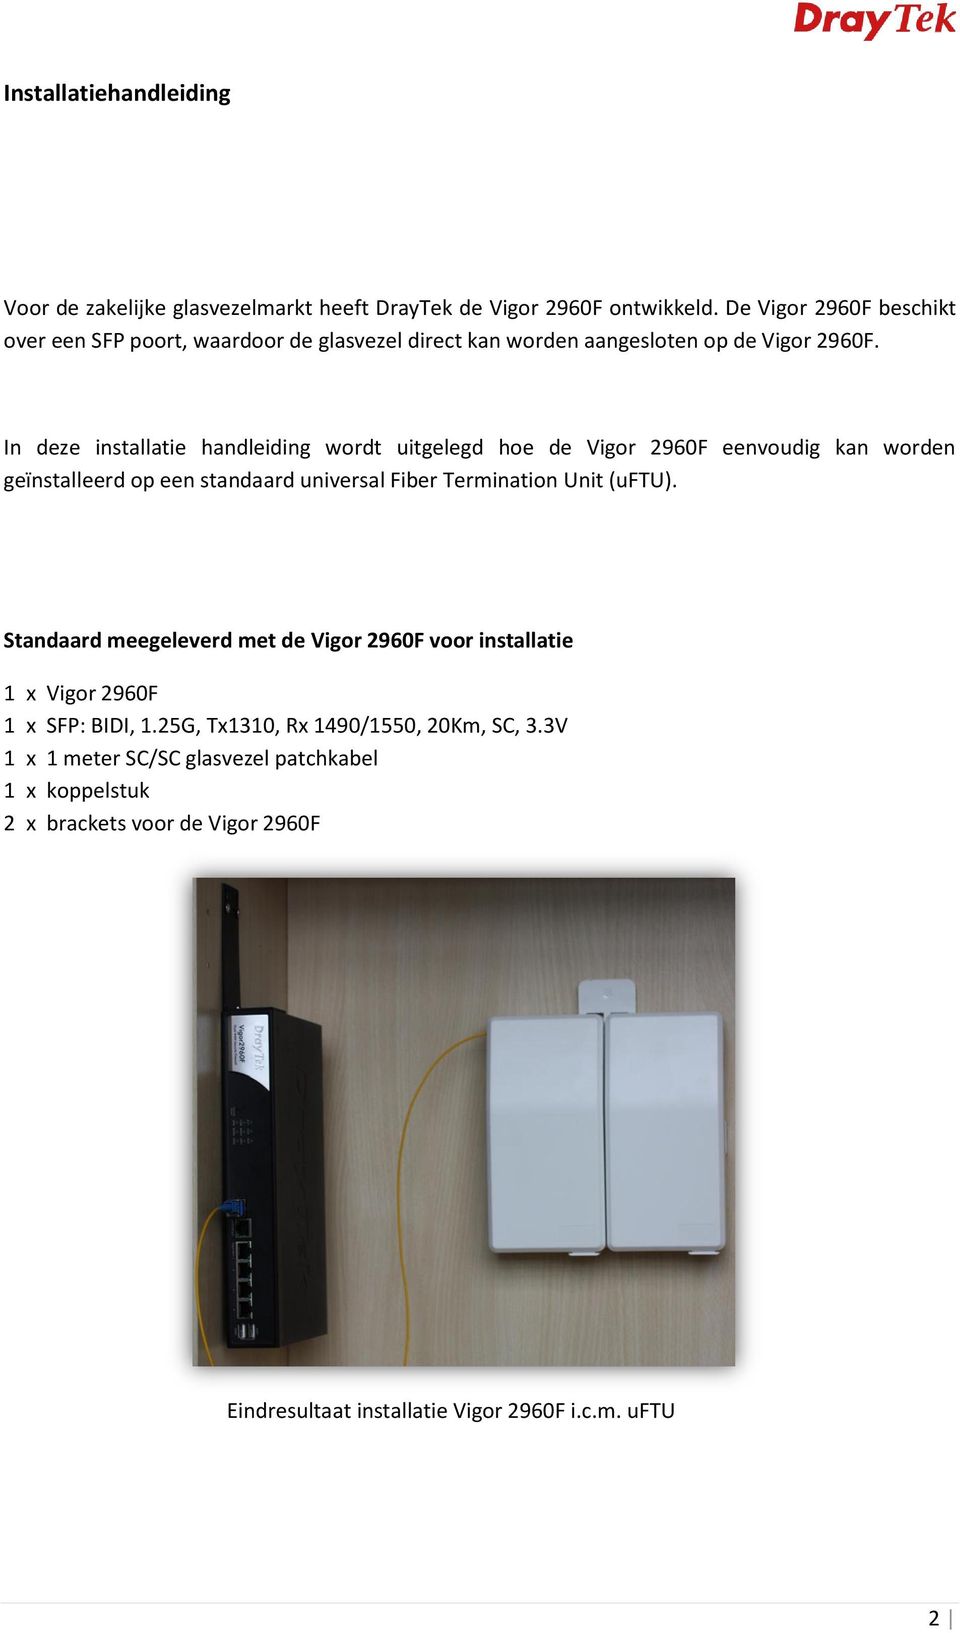 In deze installatie handleiding wordt uitgelegd hoe de Vigor 2960F eenvoudig kan worden geïnstalleerd op een standaard universal Fiber Termination Unit (uftu).